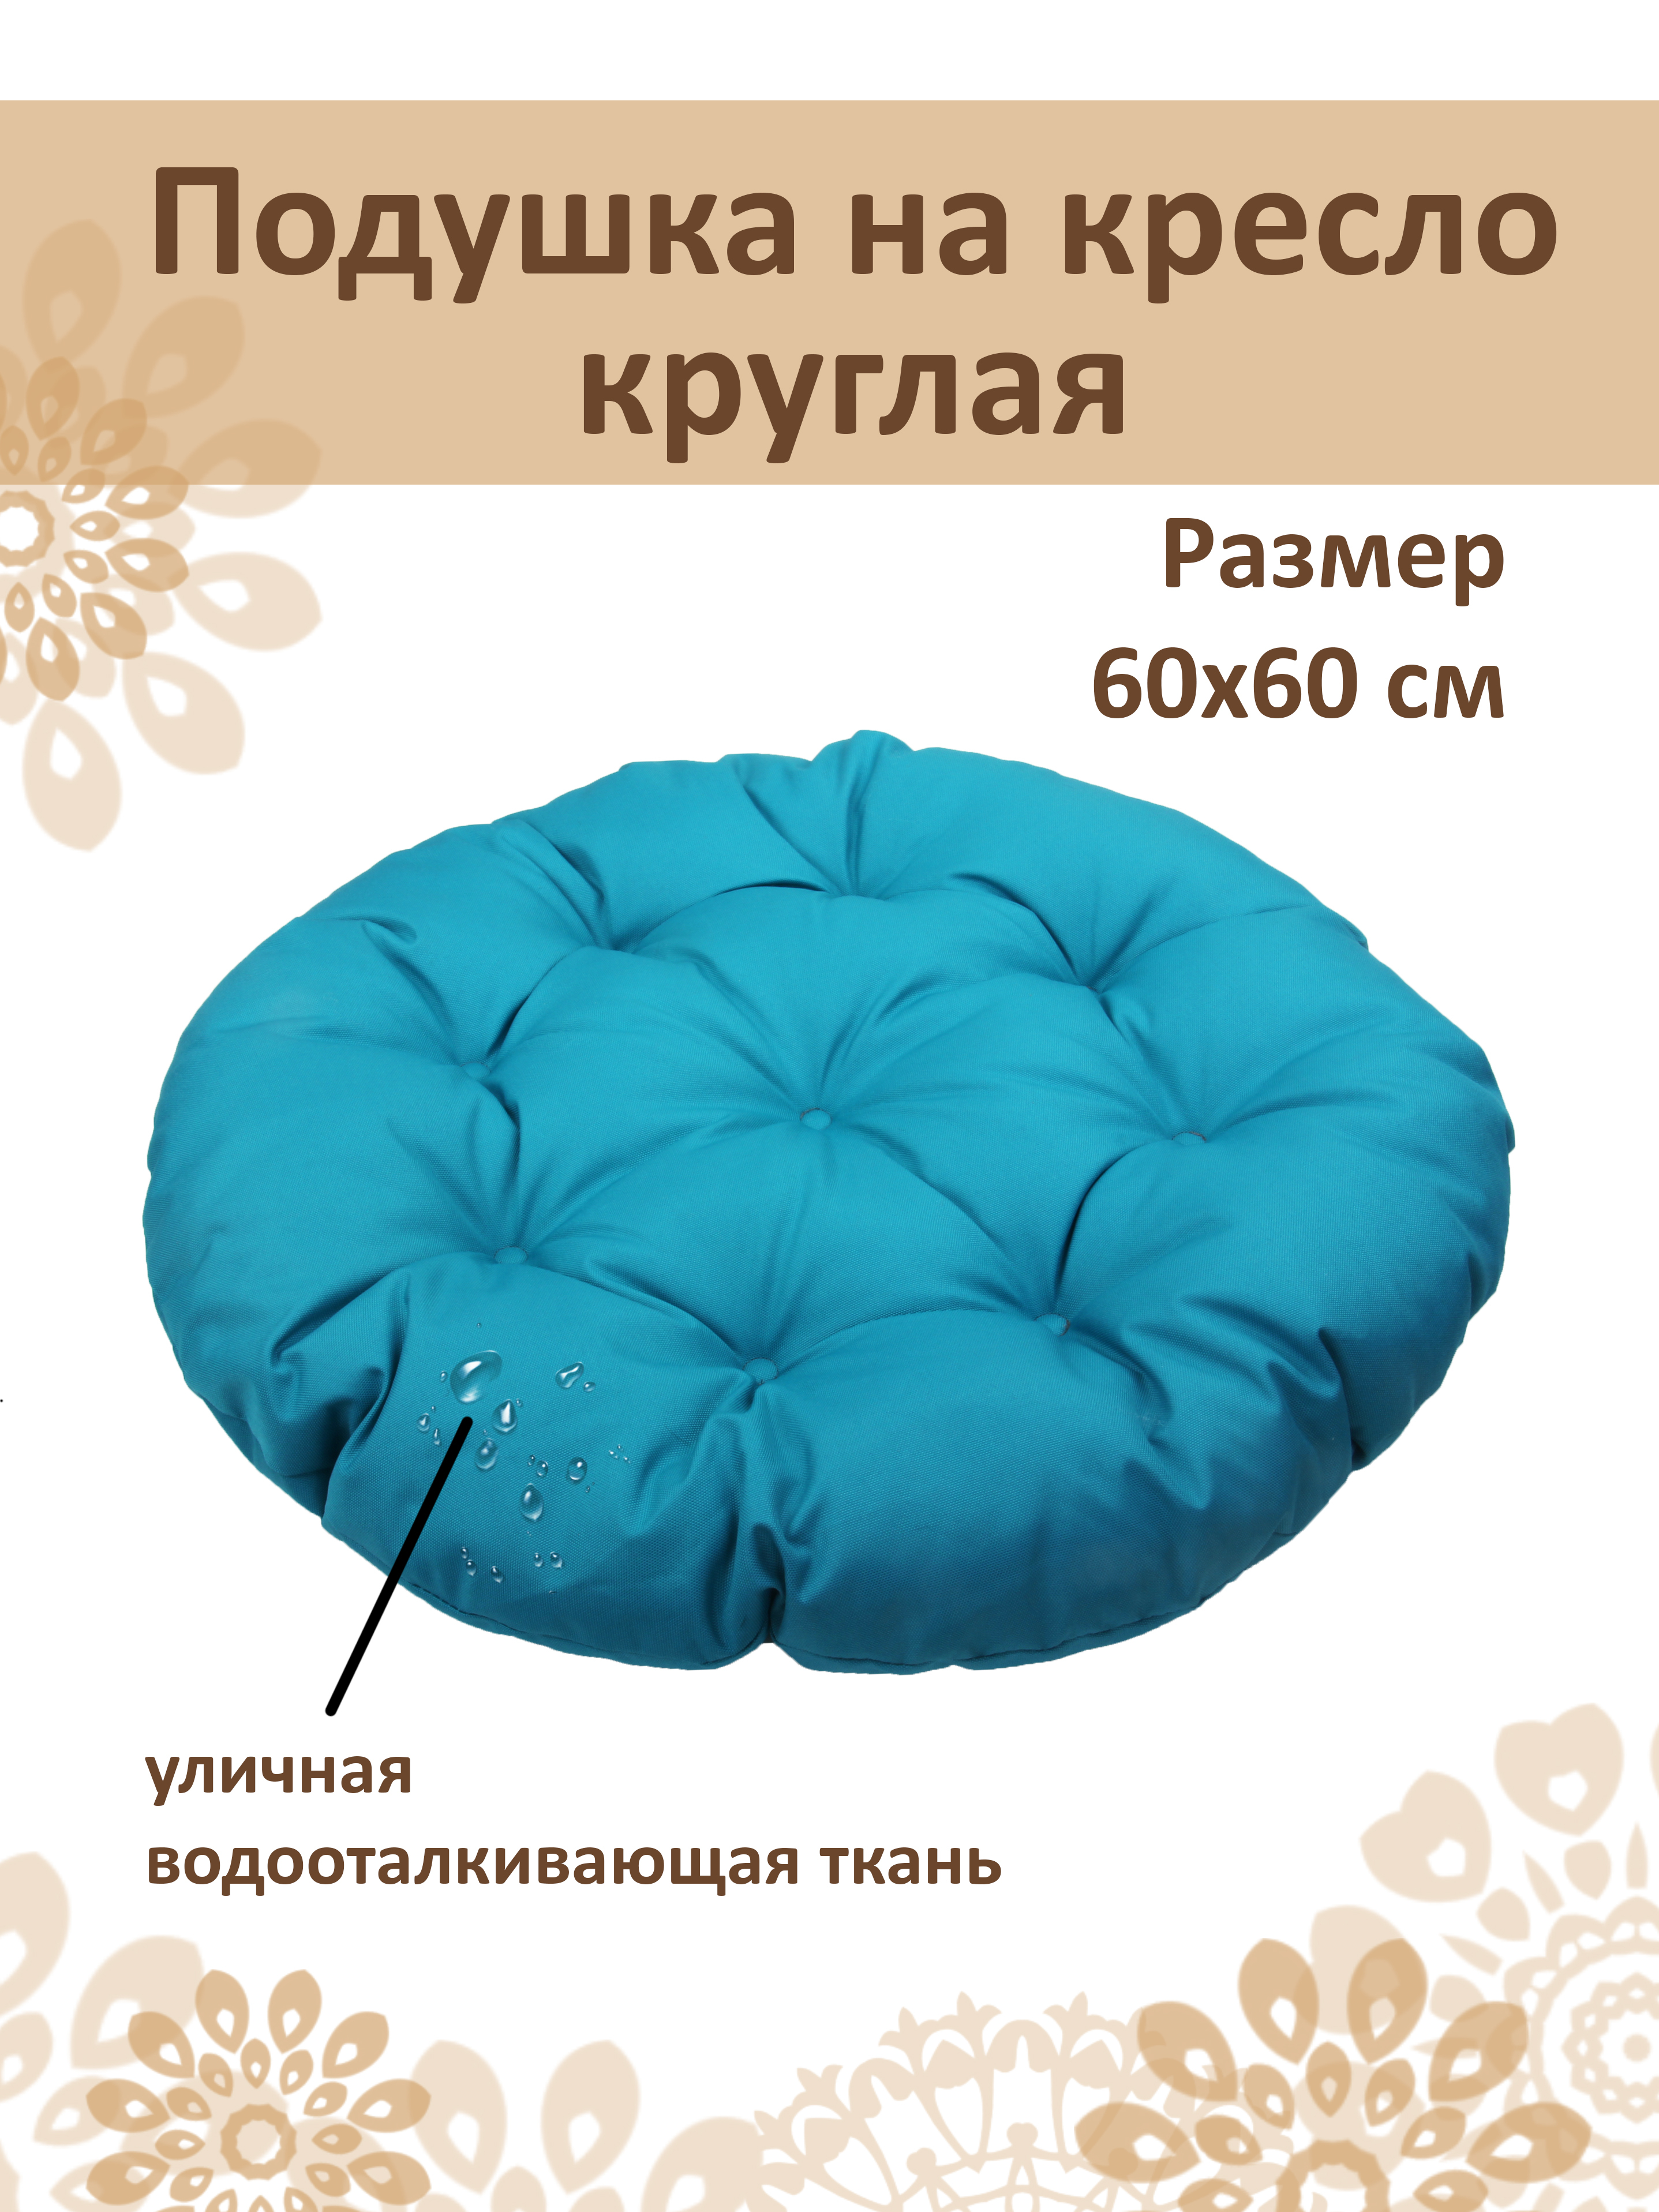 Круглая подушка для подвесного кресла